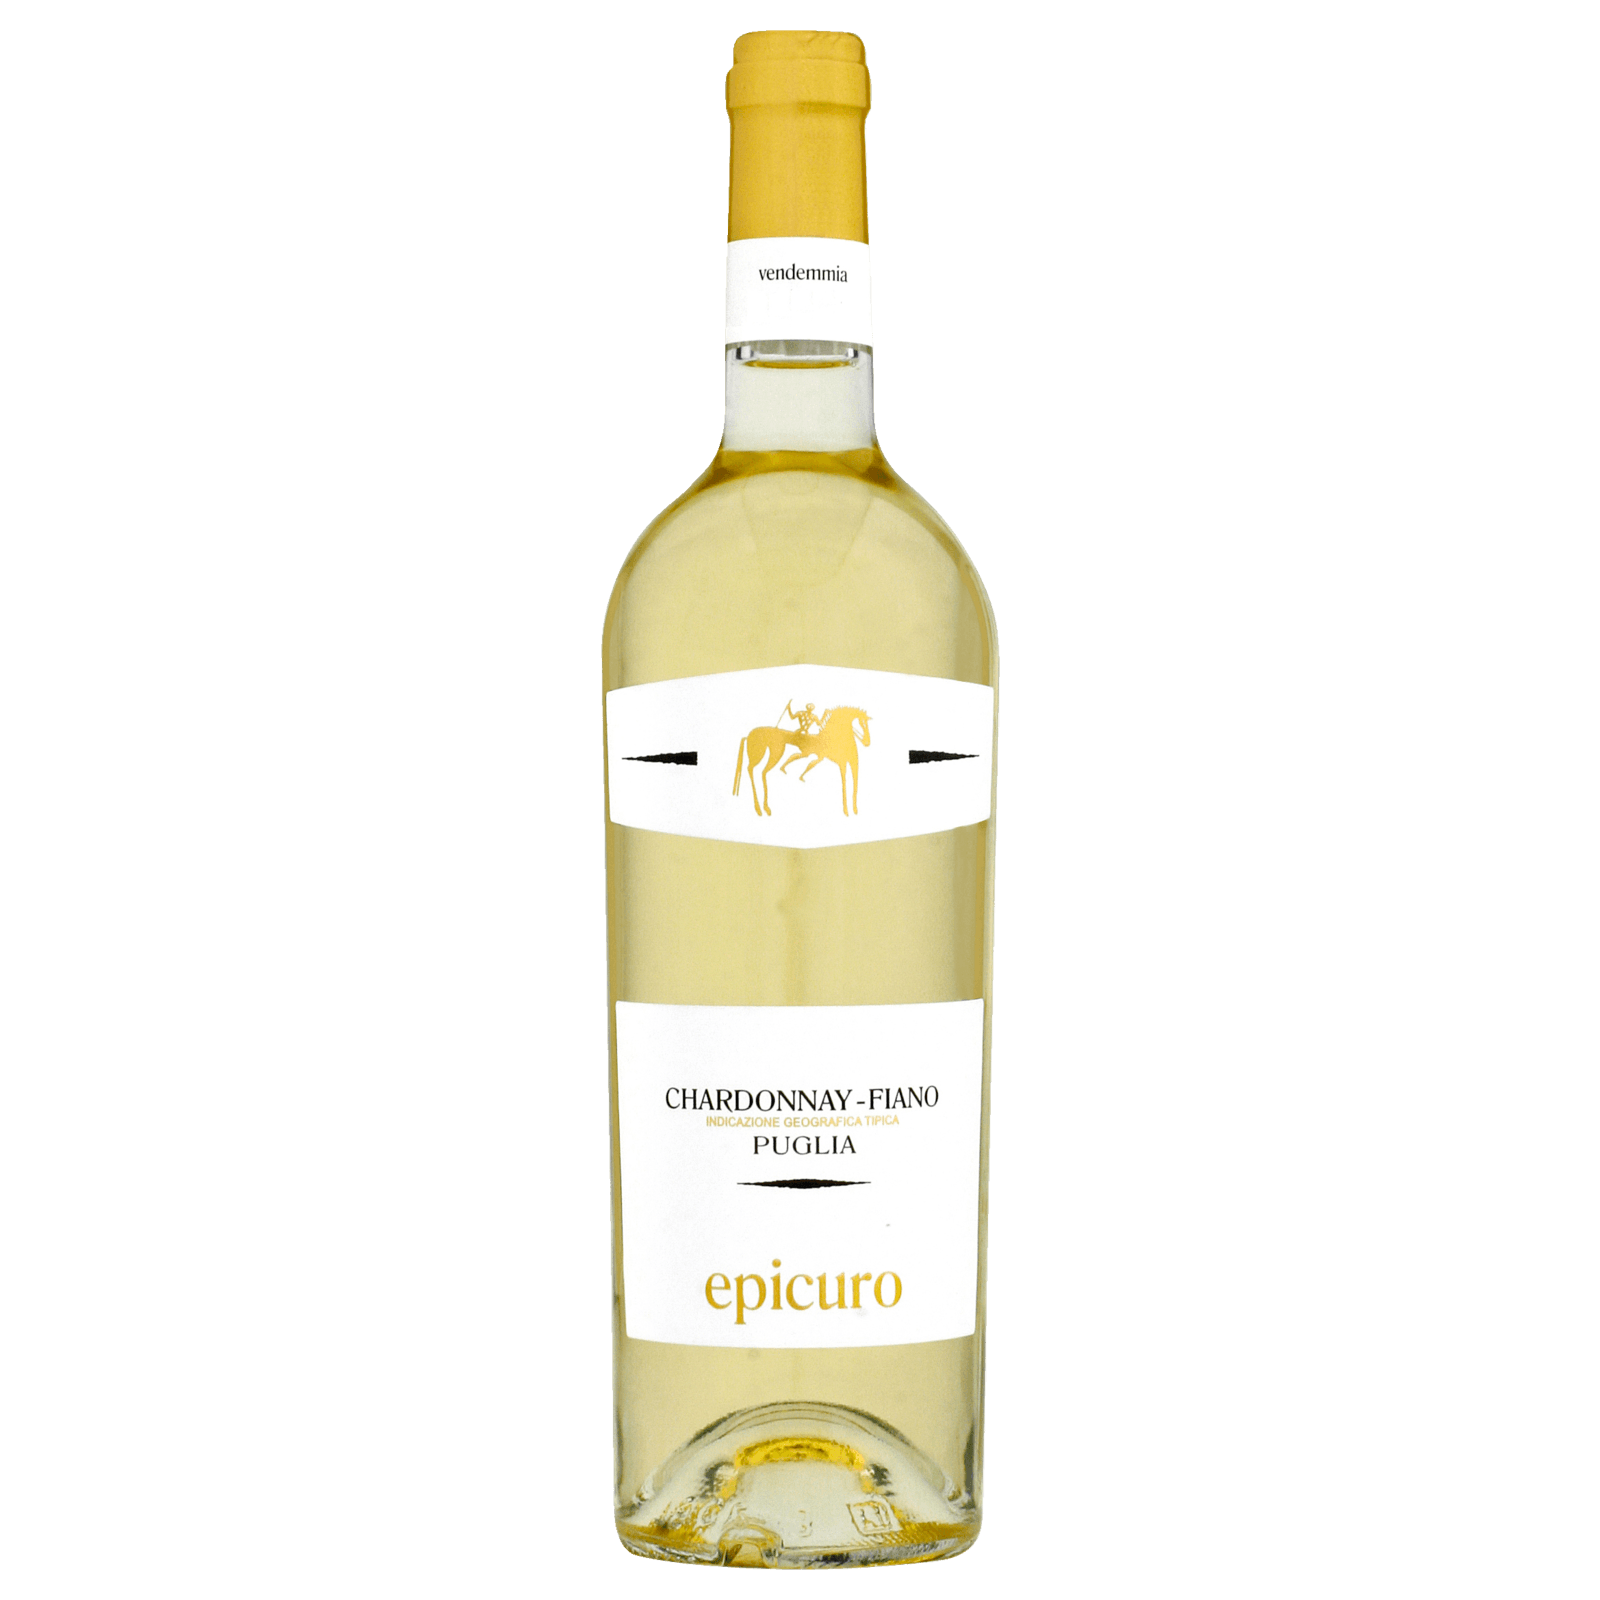 Epicuro Weißwein Chardonnay Puglia trocken IGP bestellen! REWE 0,75l online bei